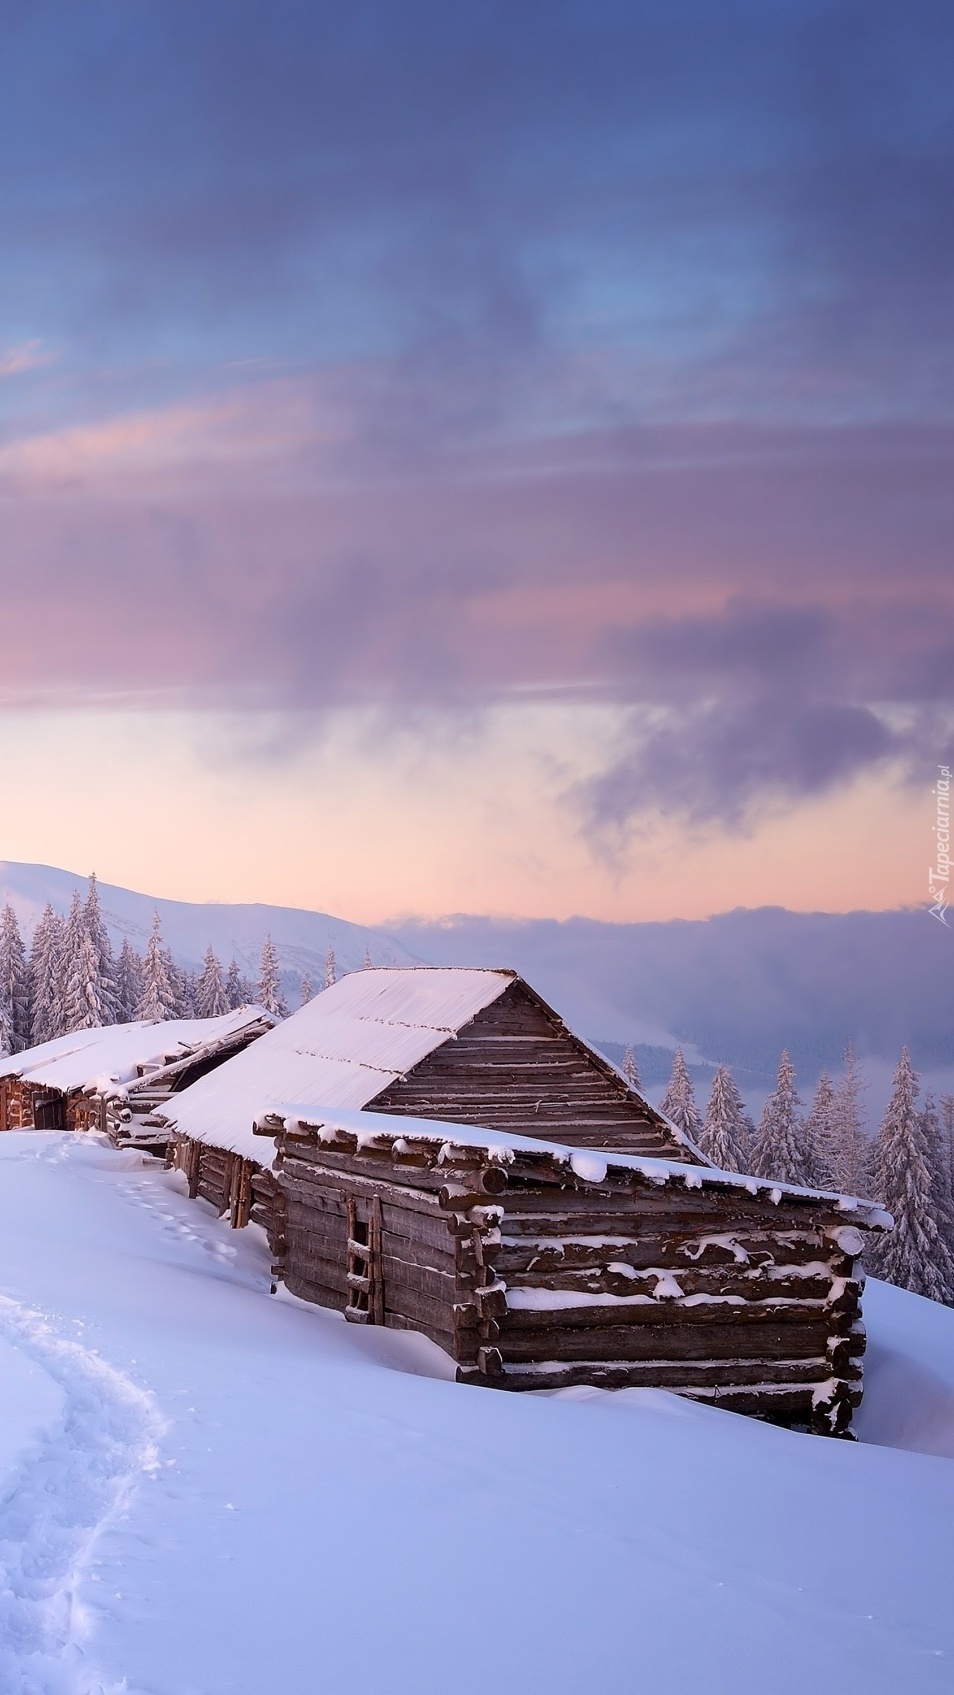 Drewniane domki zasypane śniegiem